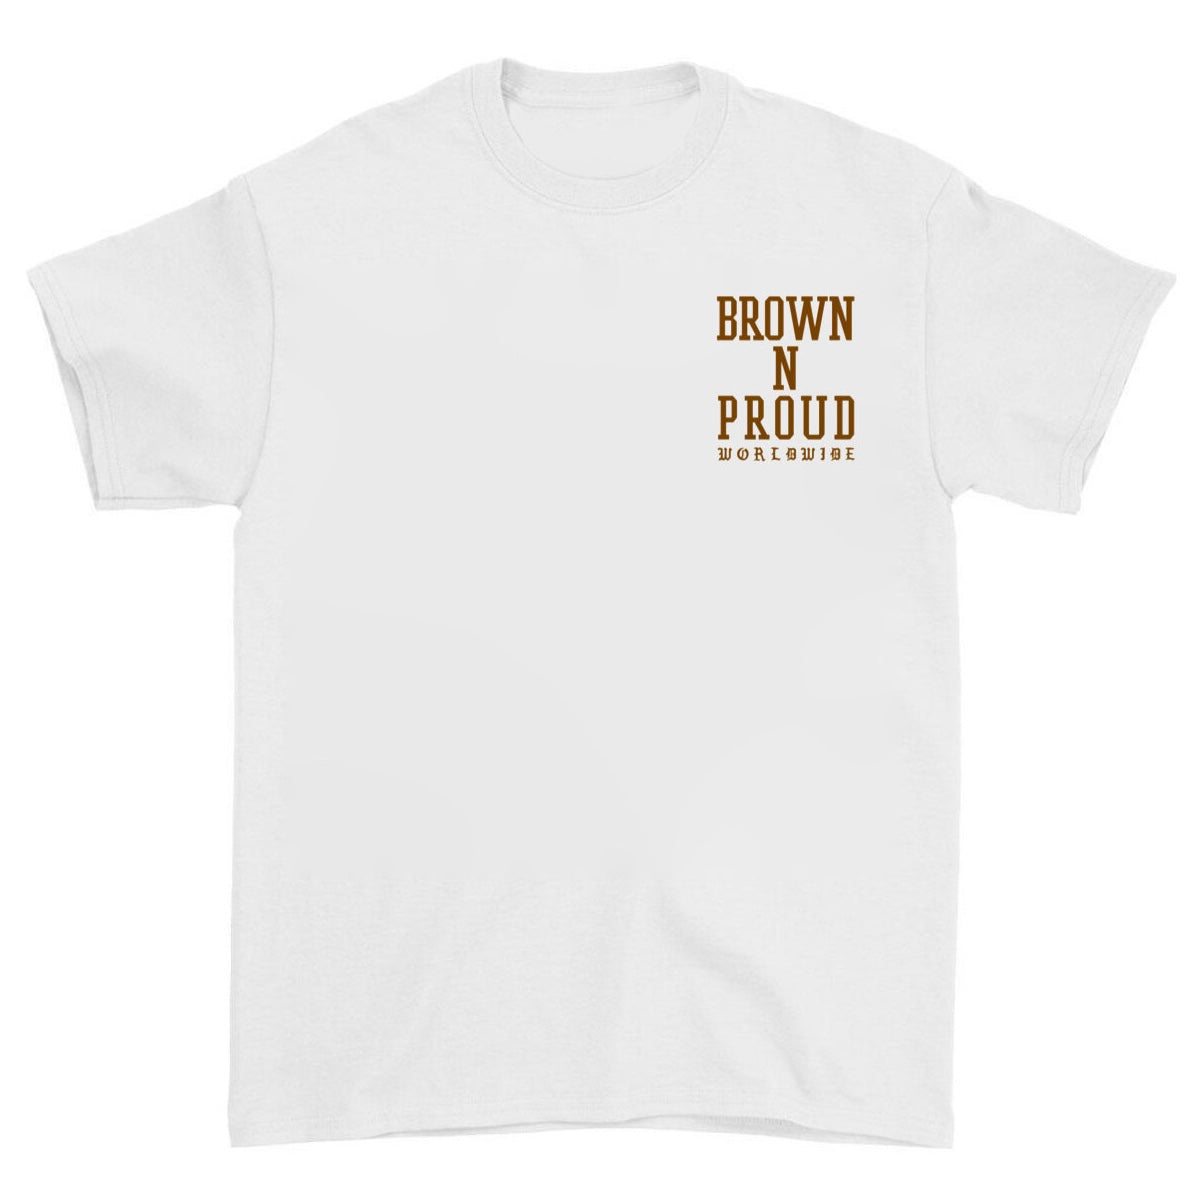 Brown N Proud Worldwide (White)